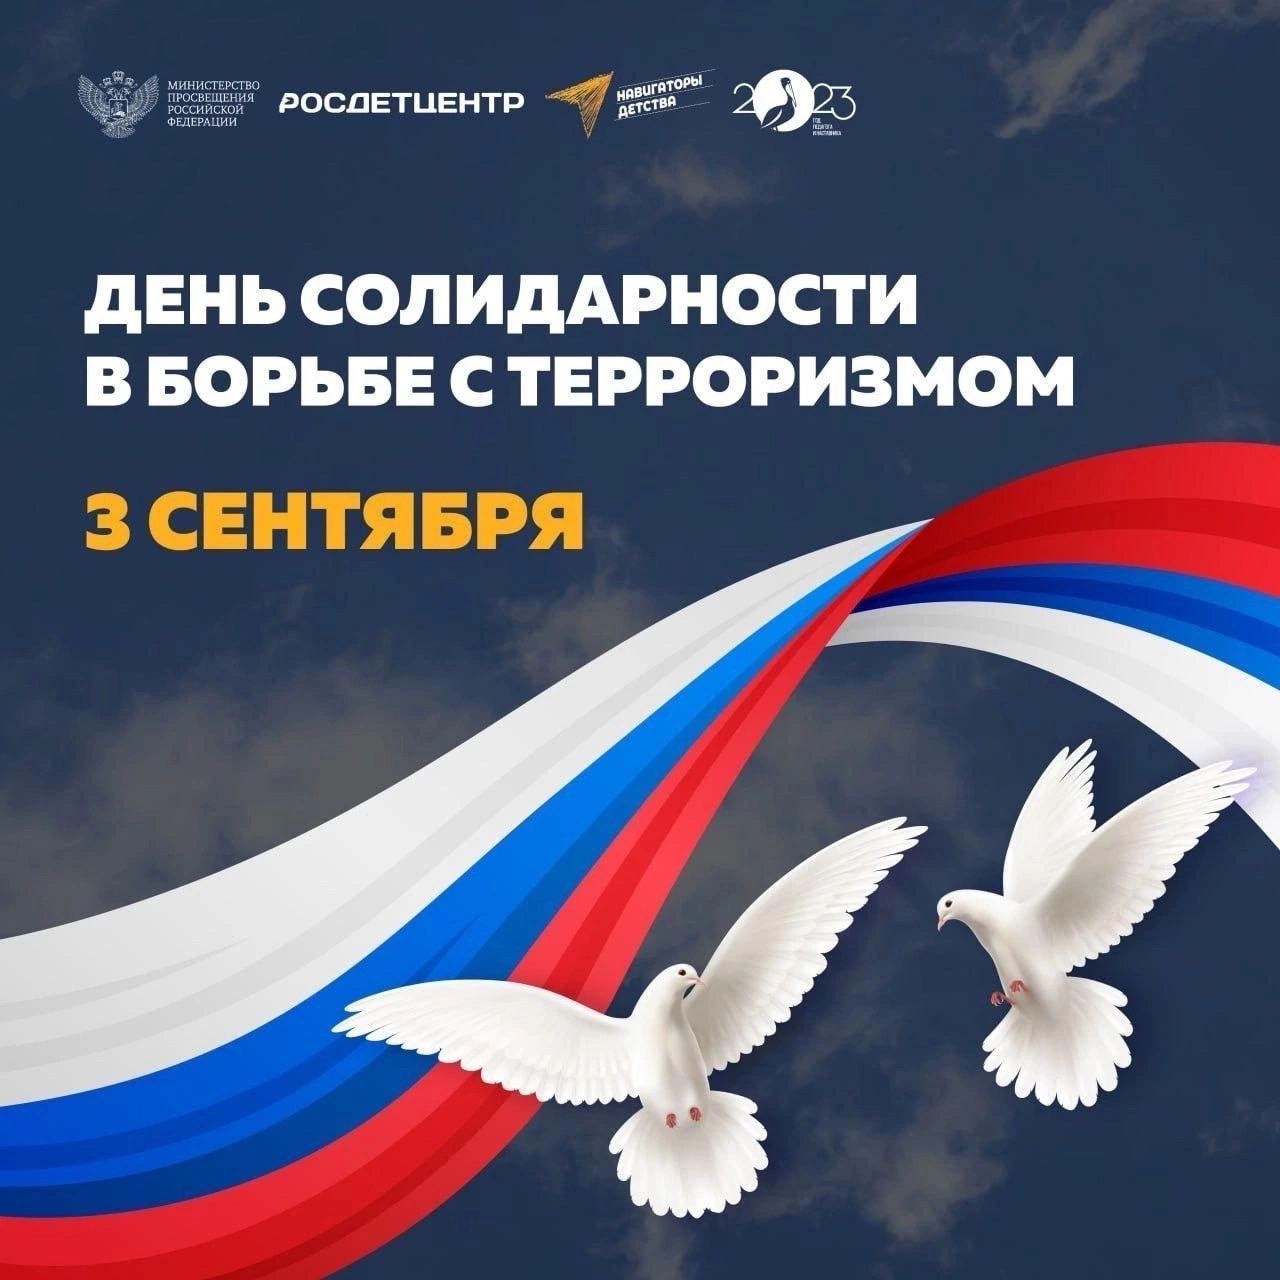 3 сентября – День солидарности в борьбе с терроризмом в России.